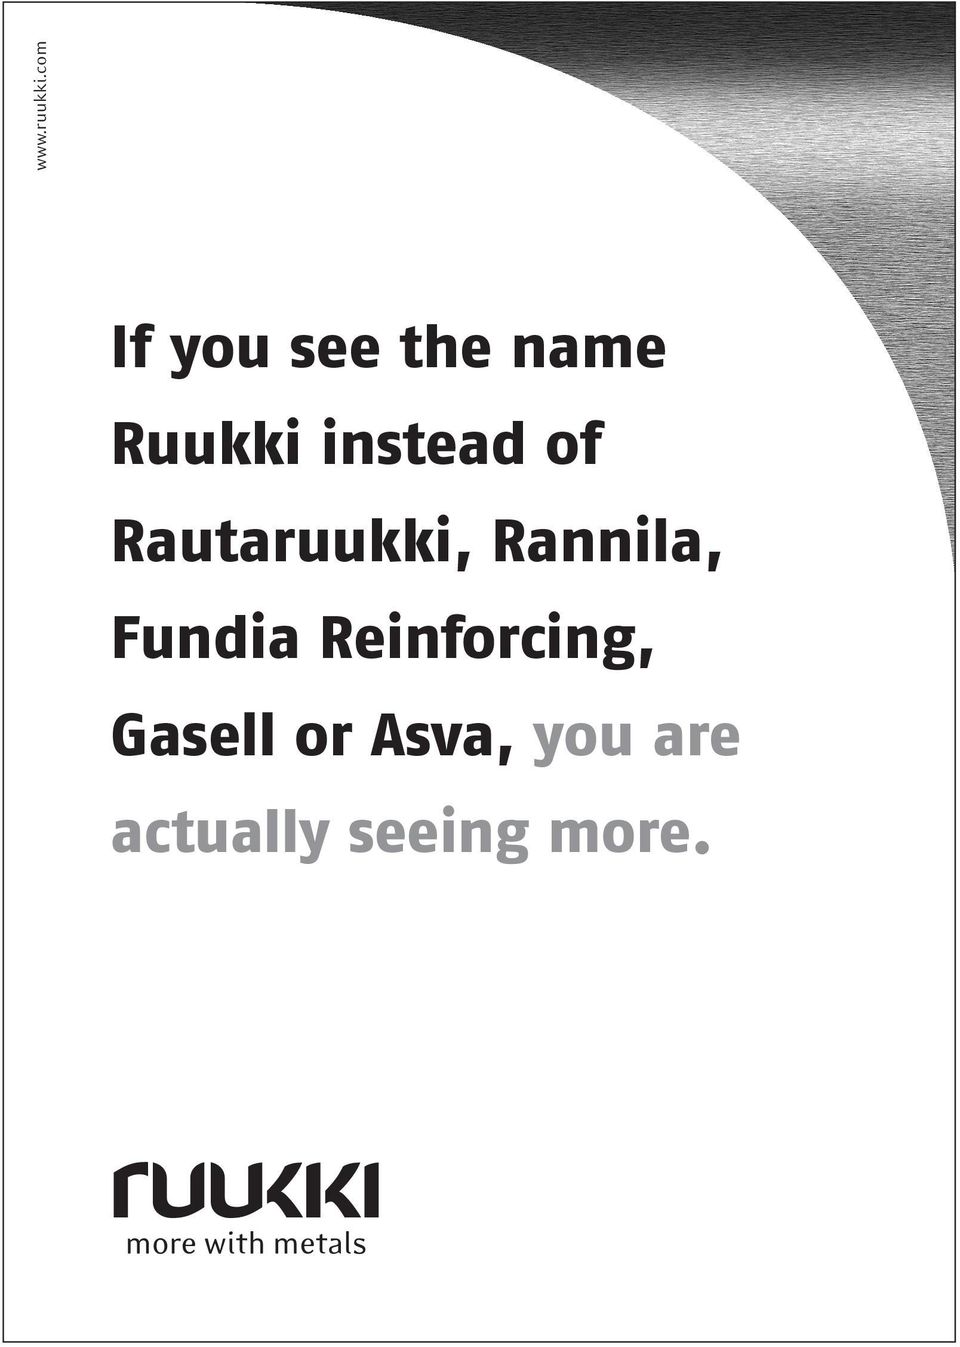 instead of Rautaruukki, Rannila,